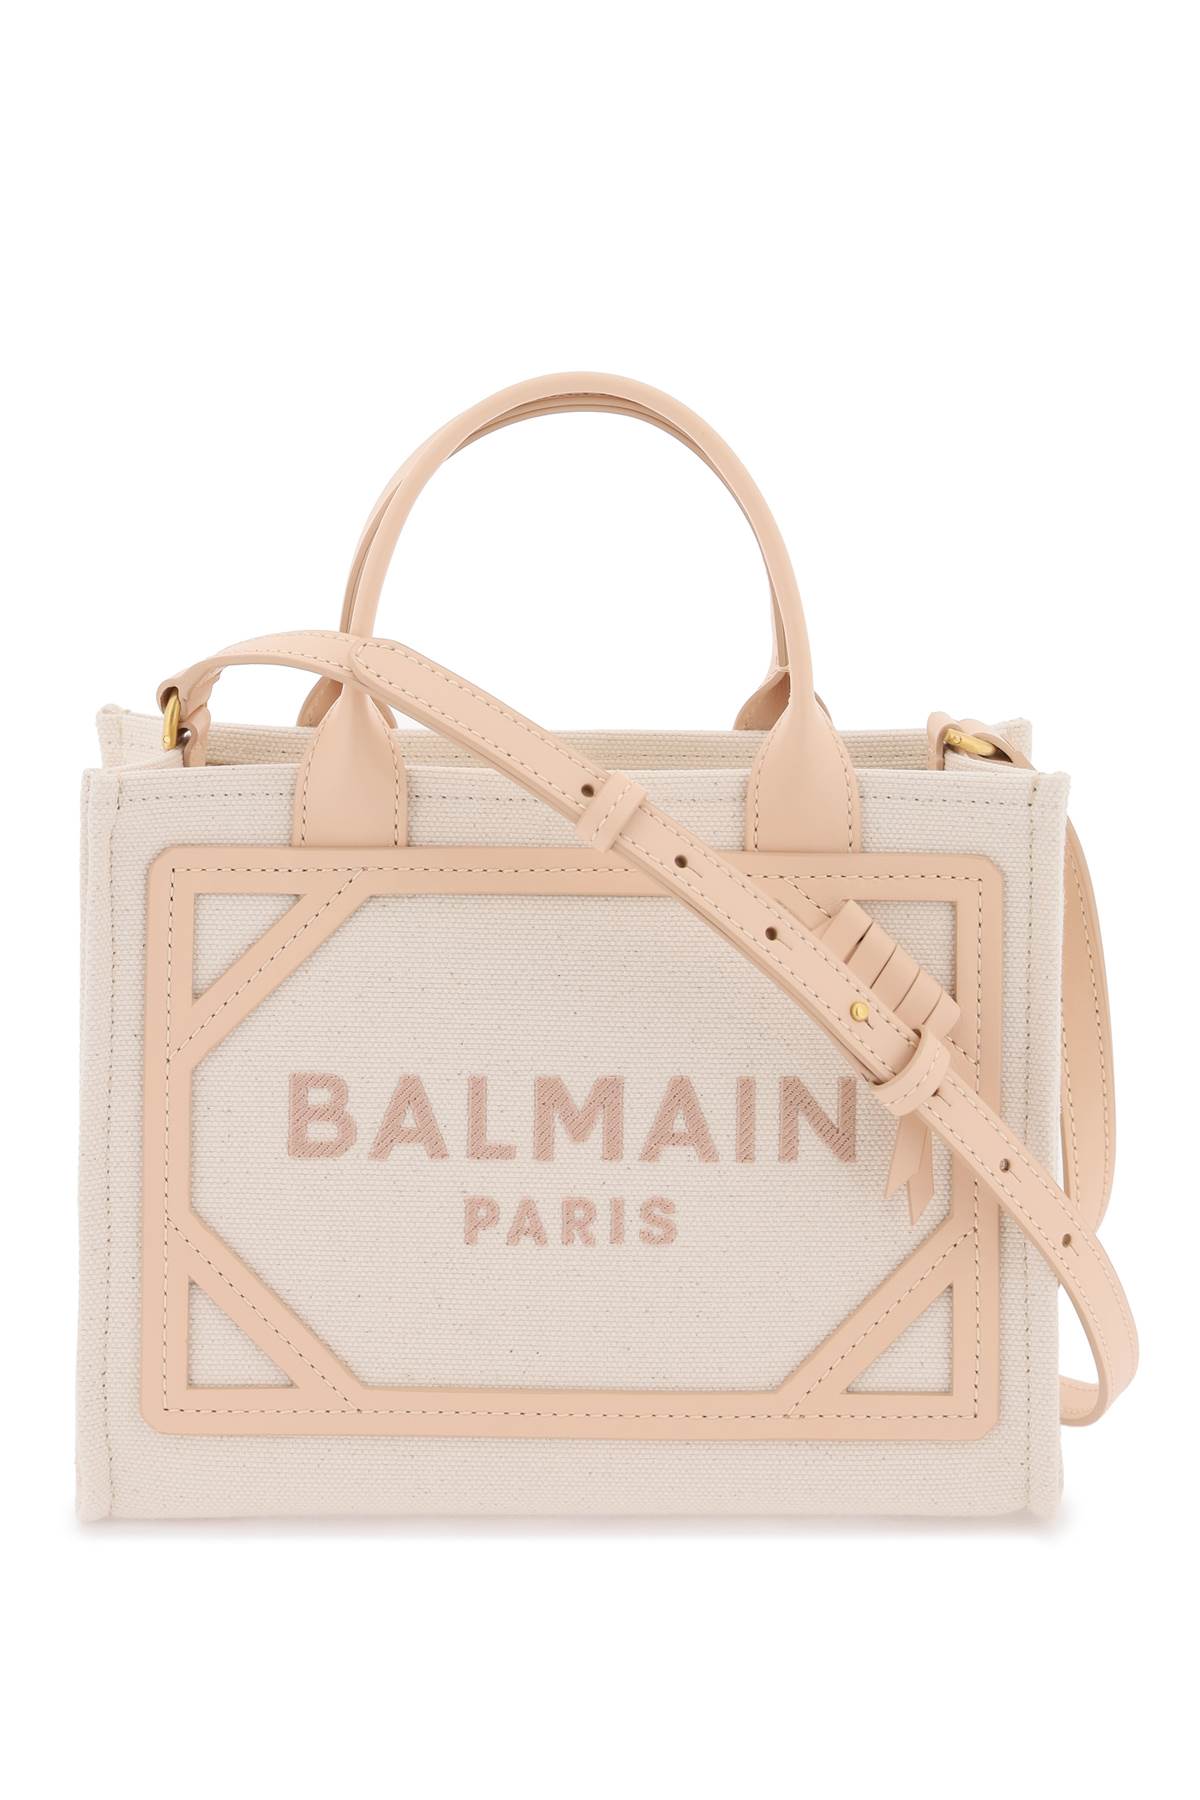 Balmain B-army Tote Bag In Creme/nude Rosè